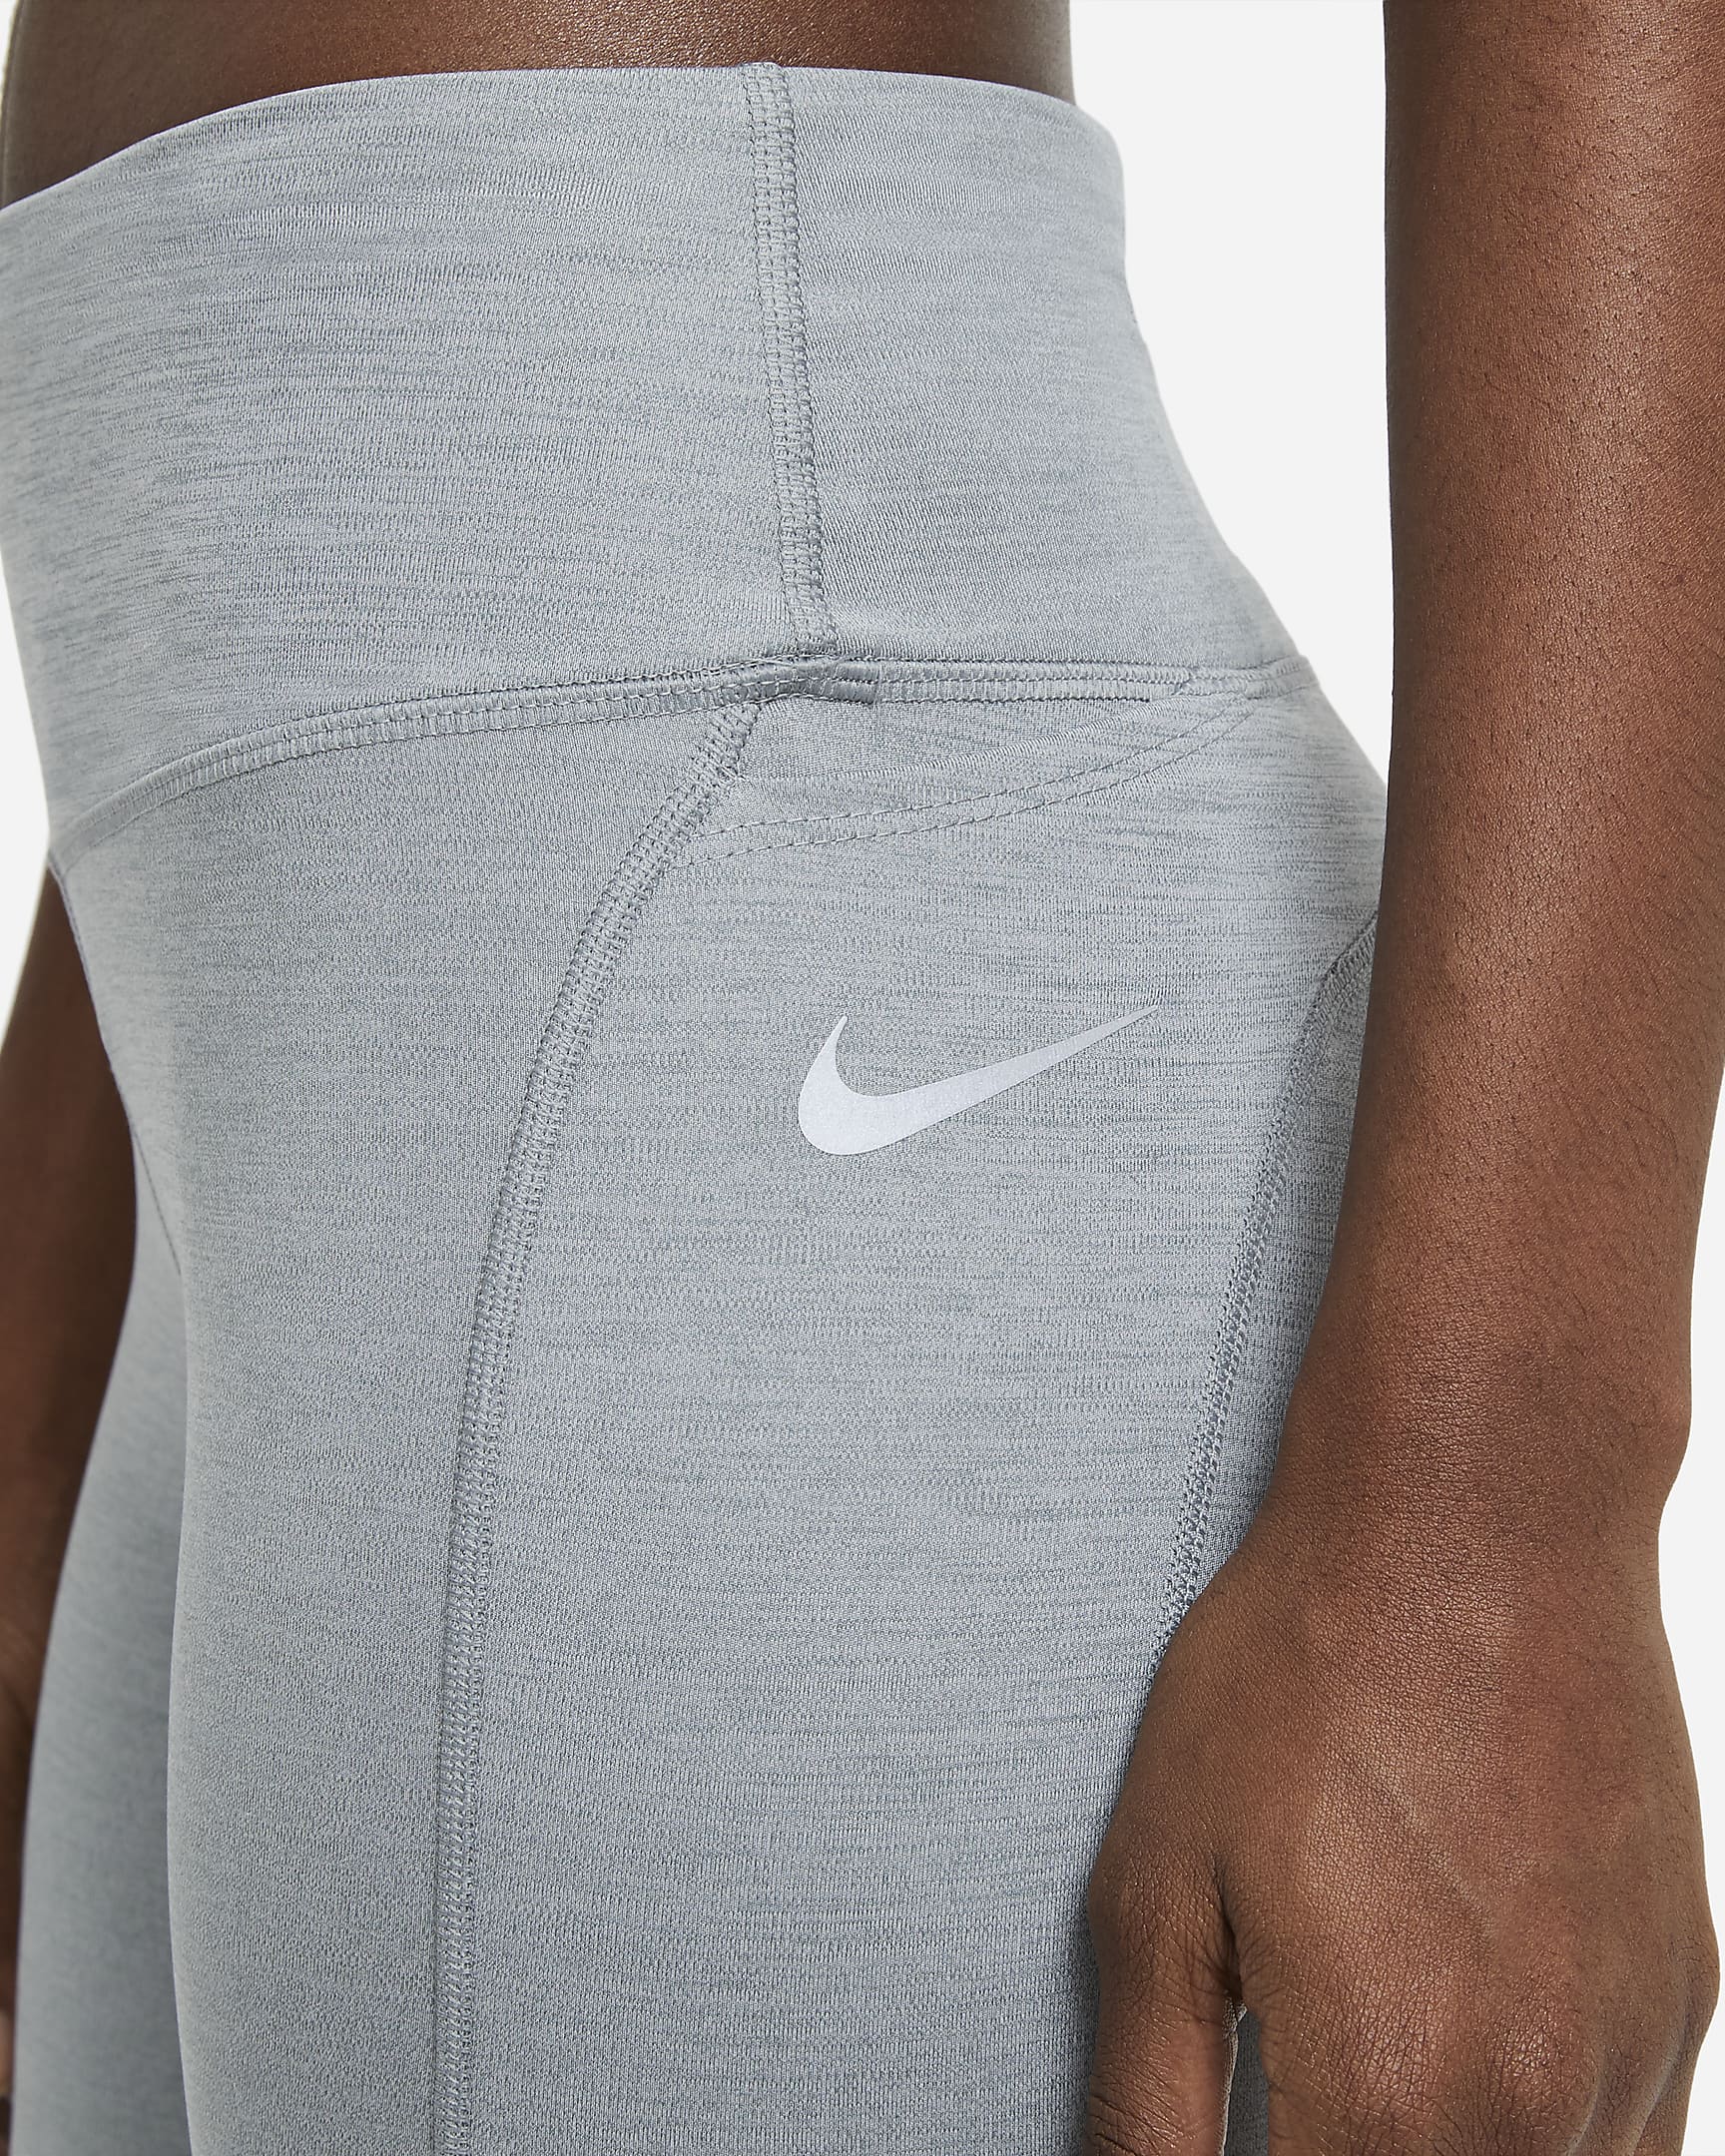 Nike Epic Fast Women's Mid-Rise Pocket Running Leggings - Smoke Grey/Heather